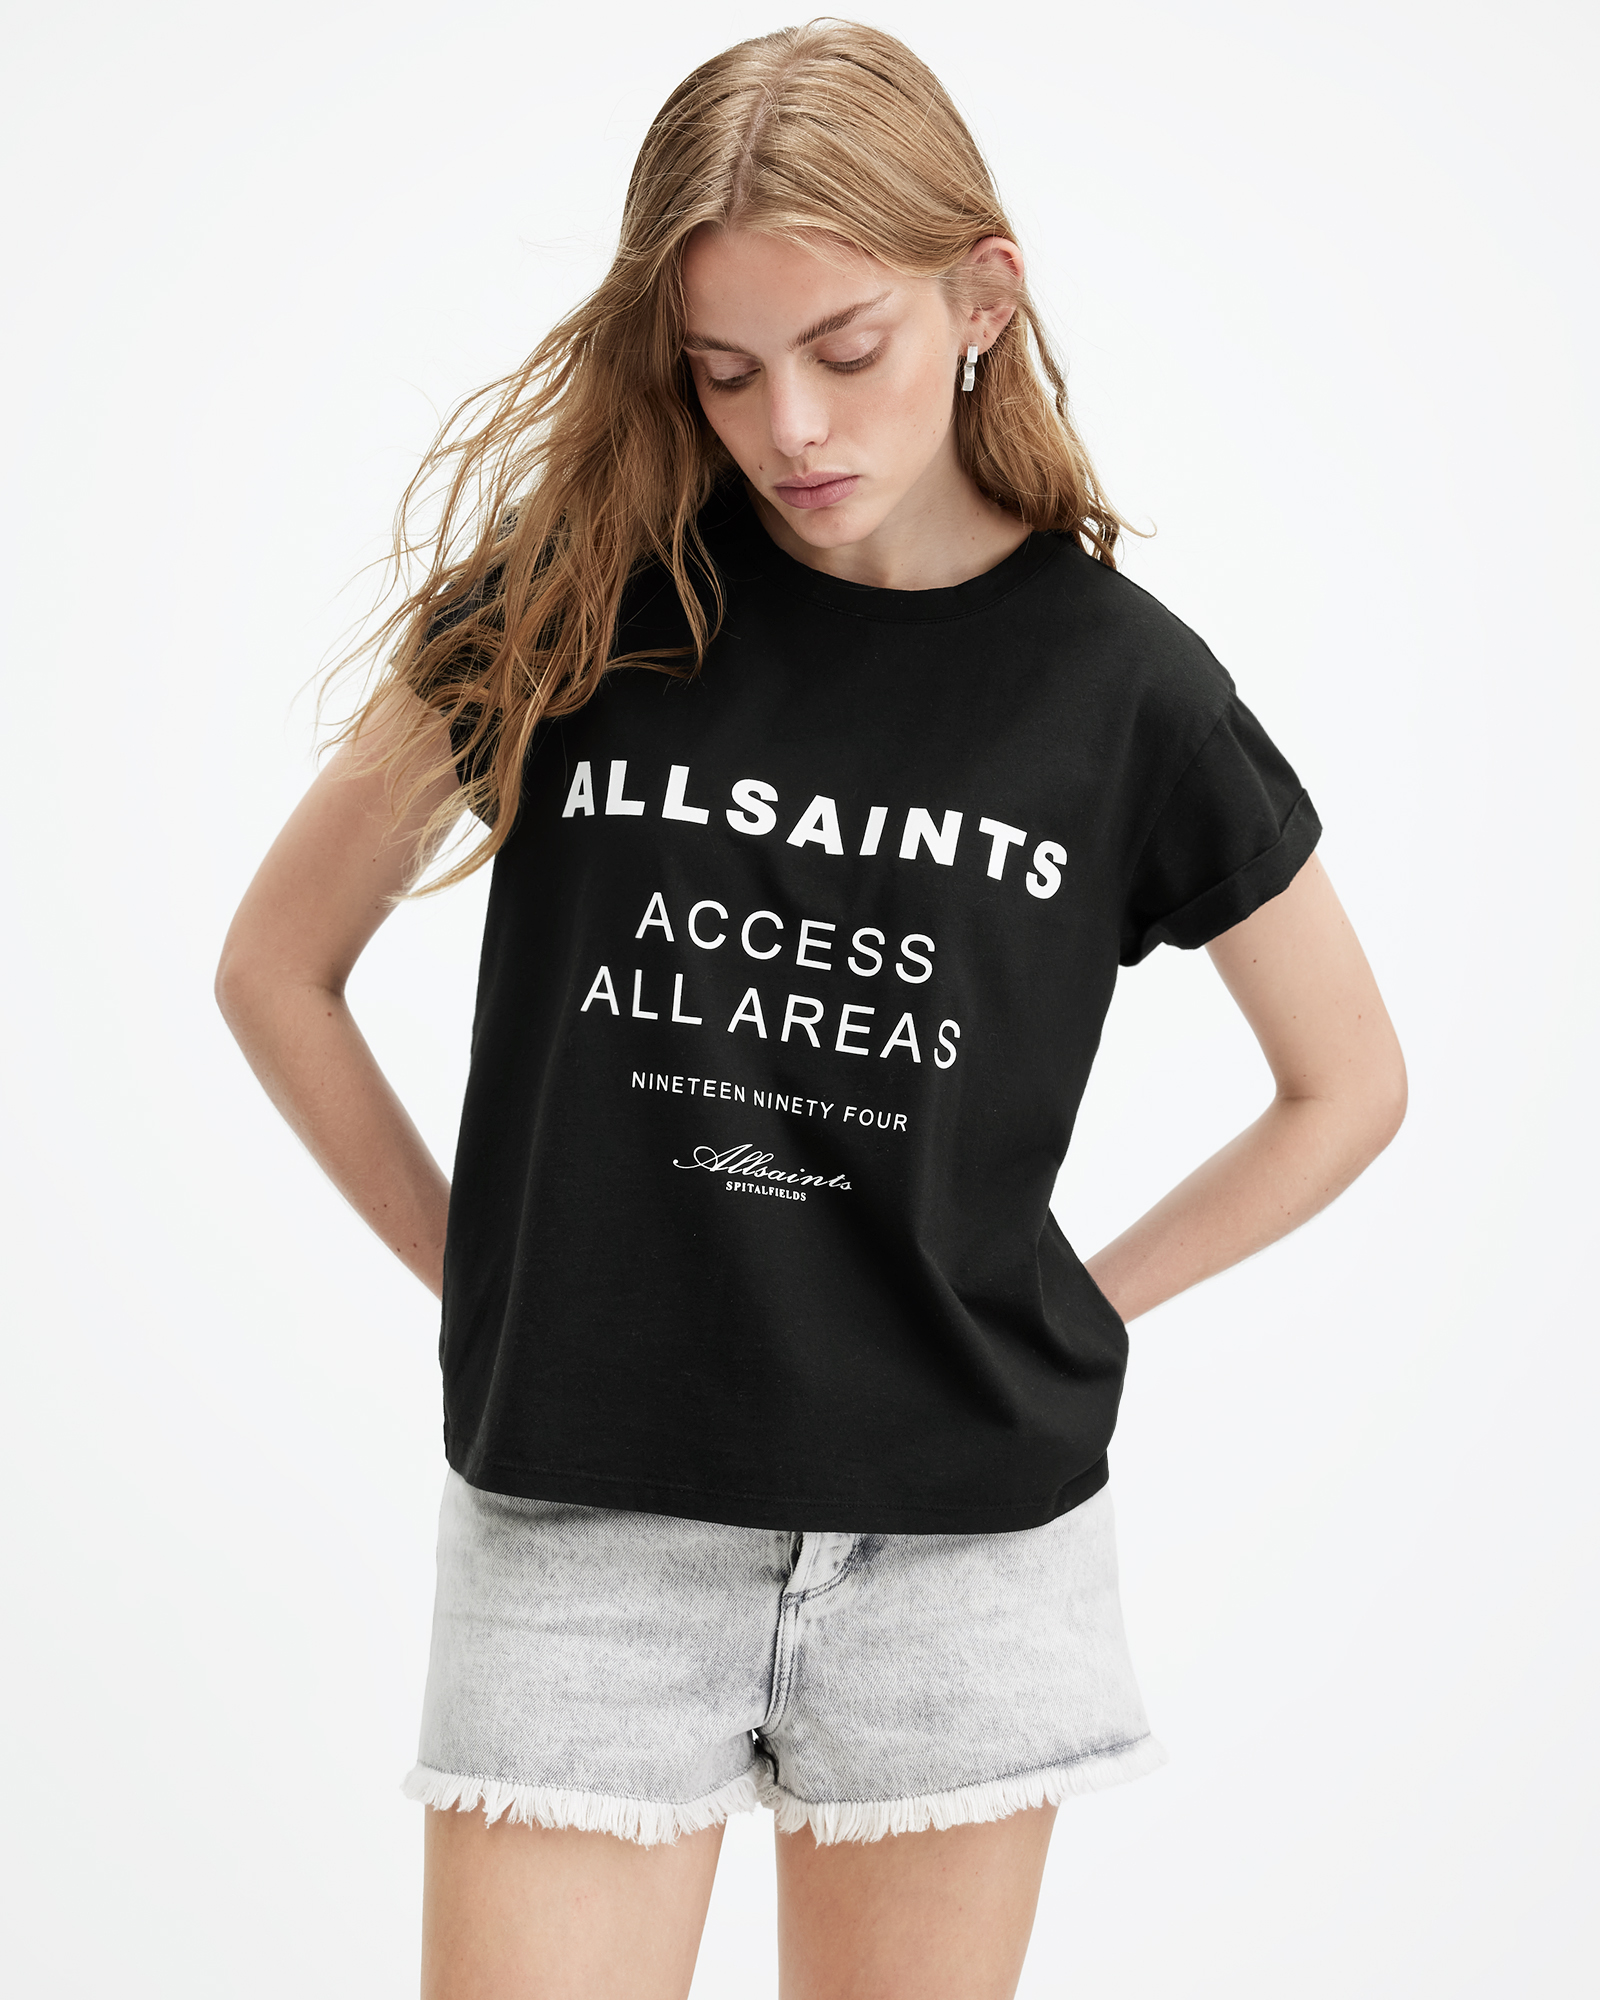 AllSaints Tour Anna Crew Neck Graphic T-Shirt